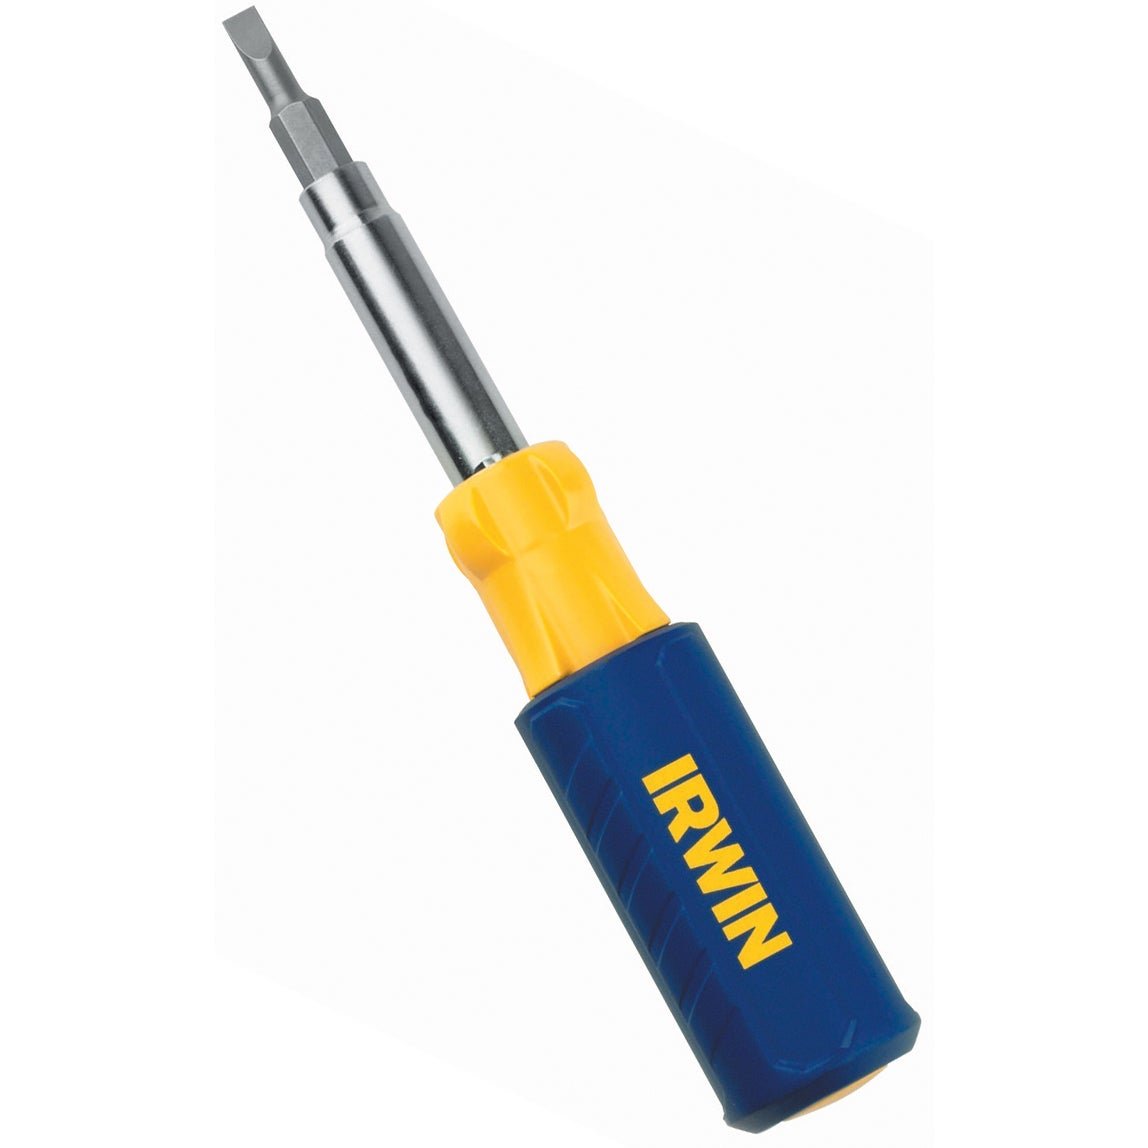 Irwin 2051100 - 9-in-1 Multi-Tool